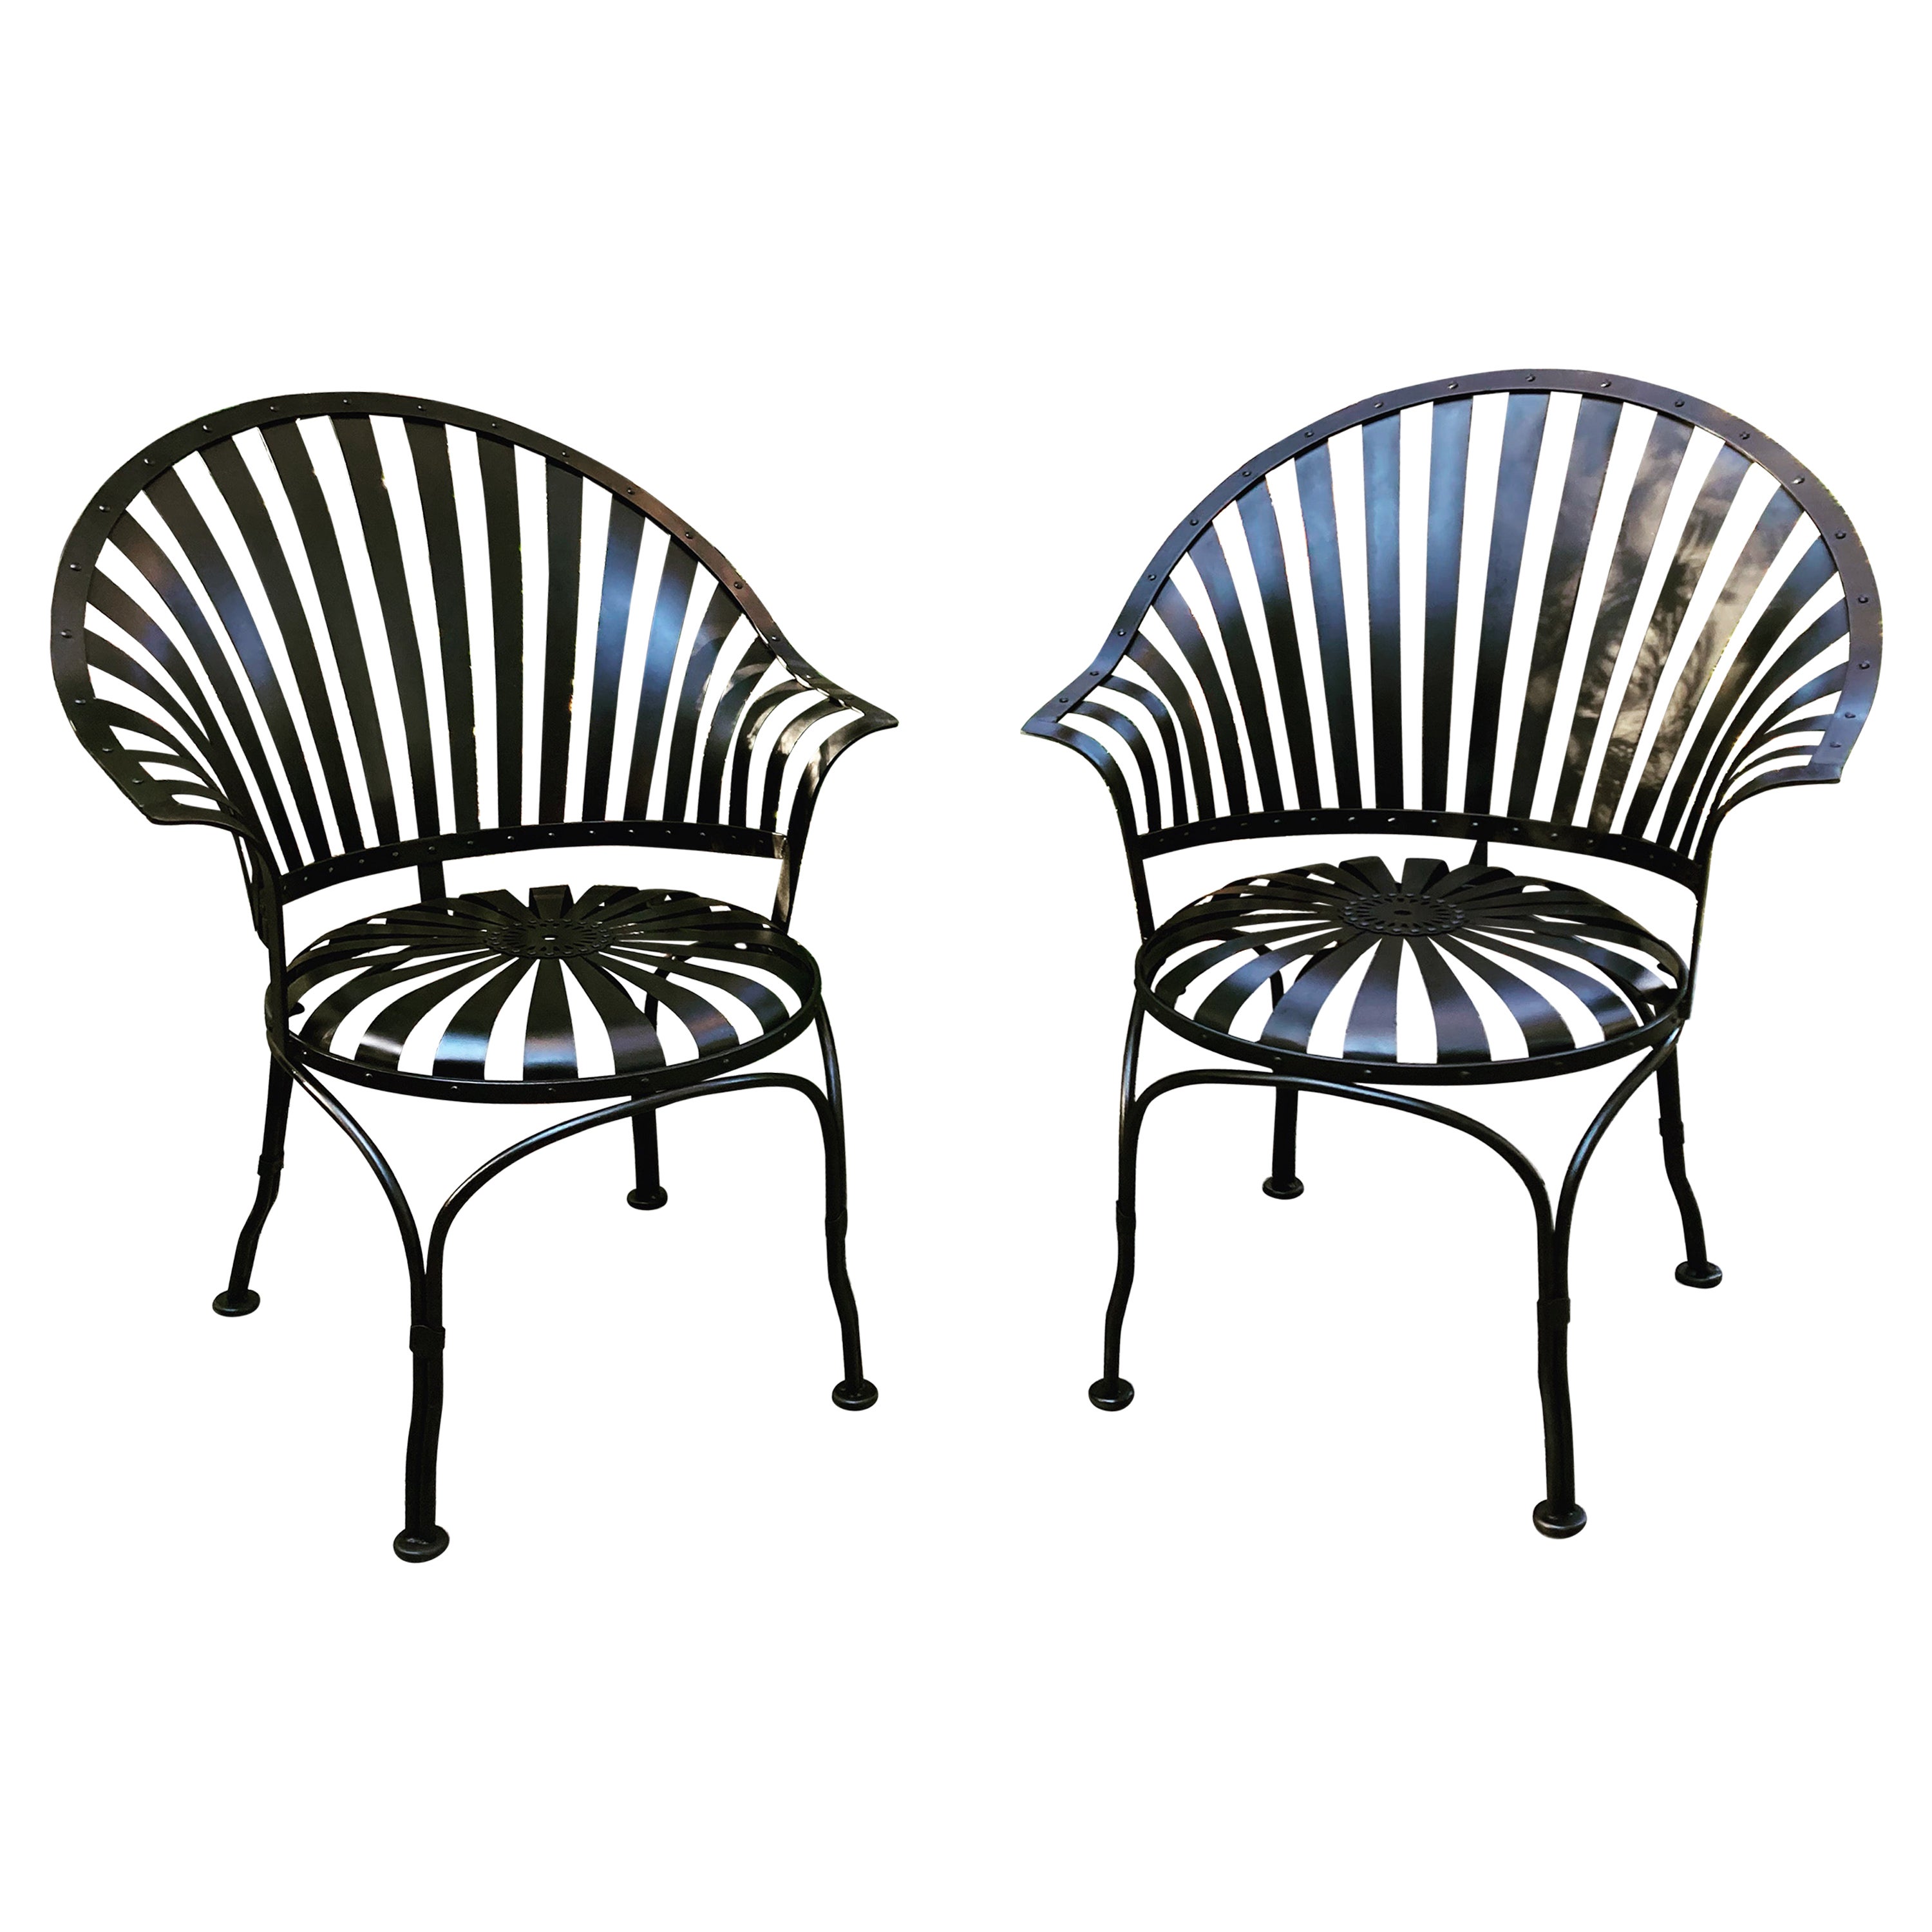 sillas de jardín de hierro con respaldo en abanico francois carre - un par